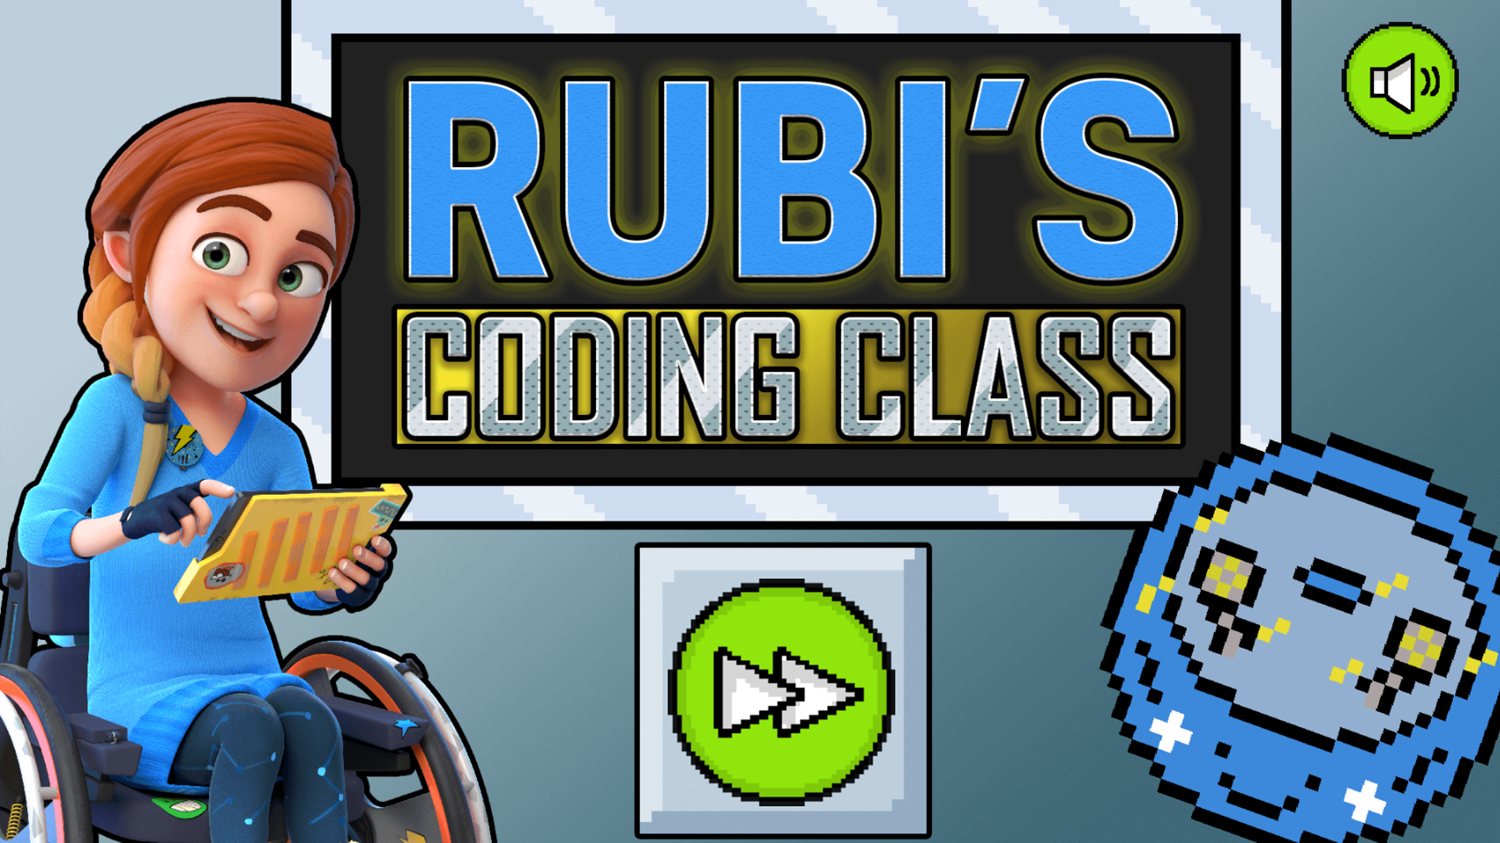 Rubi's Coding Class Game Welcome Screen Screenshot.